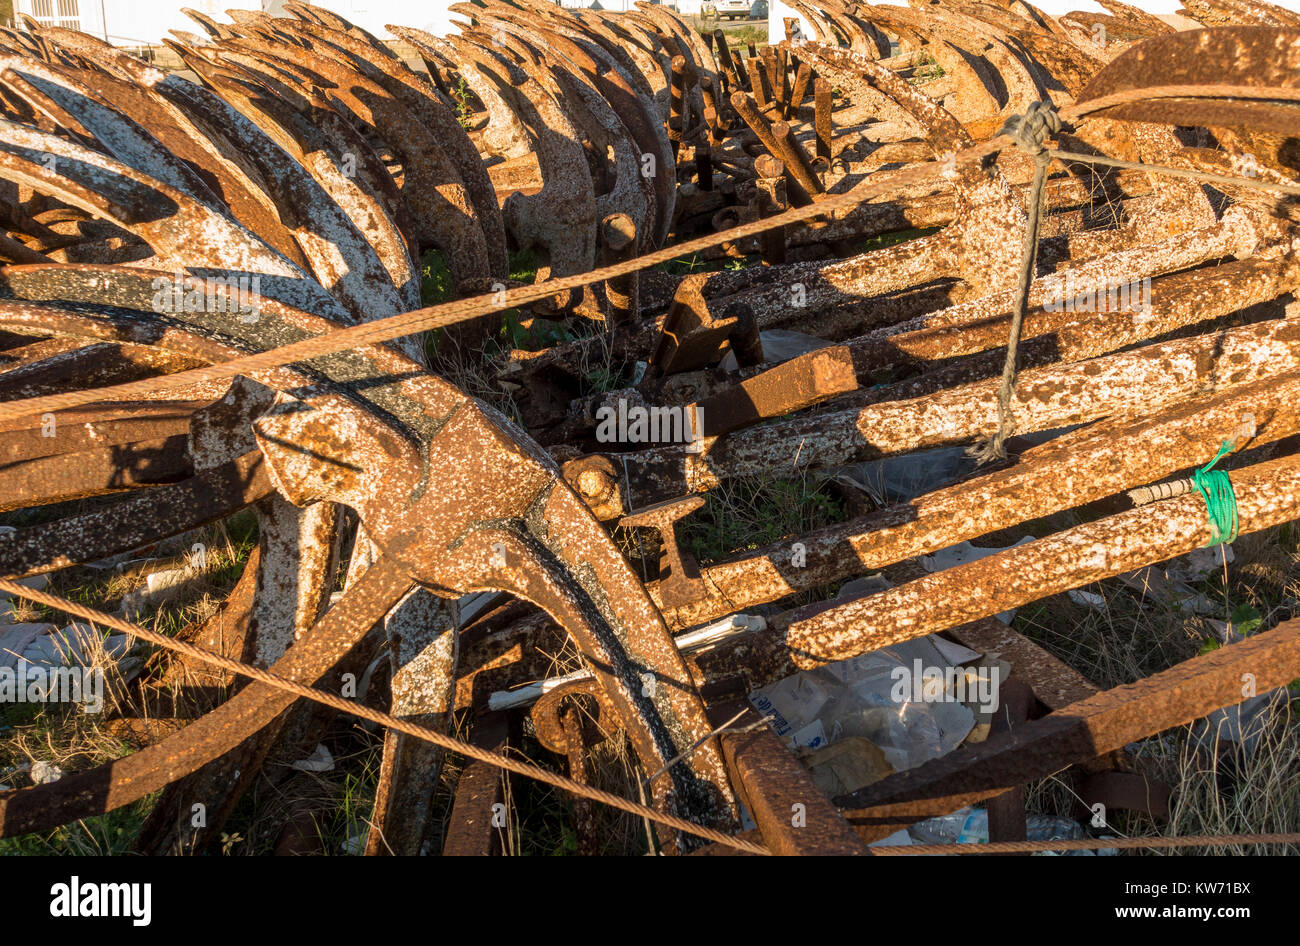 Rostiger Anker, für den Thunfischfang eingesetzt, außerhalb der Saison auf trockenem Land gestapelt im Hafen von Barbate, Costa de la Luz, Andalusien, Spanien. Stockfoto